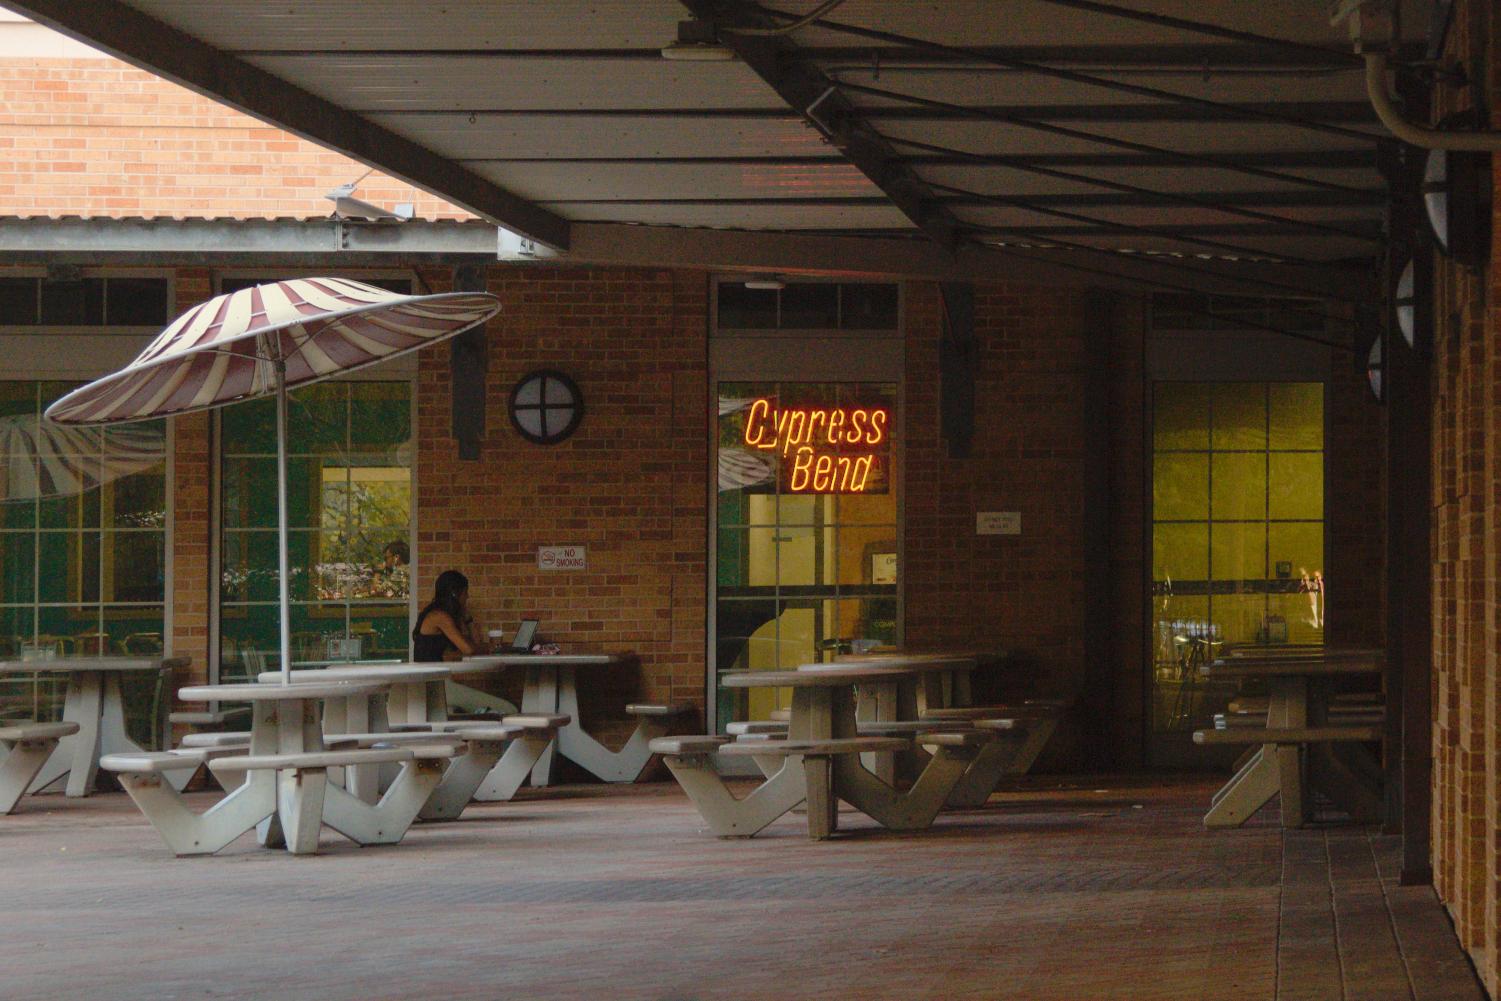 小菲尔德阳台咖啡馆和赛普拉斯弯咖啡馆将延长营业时间